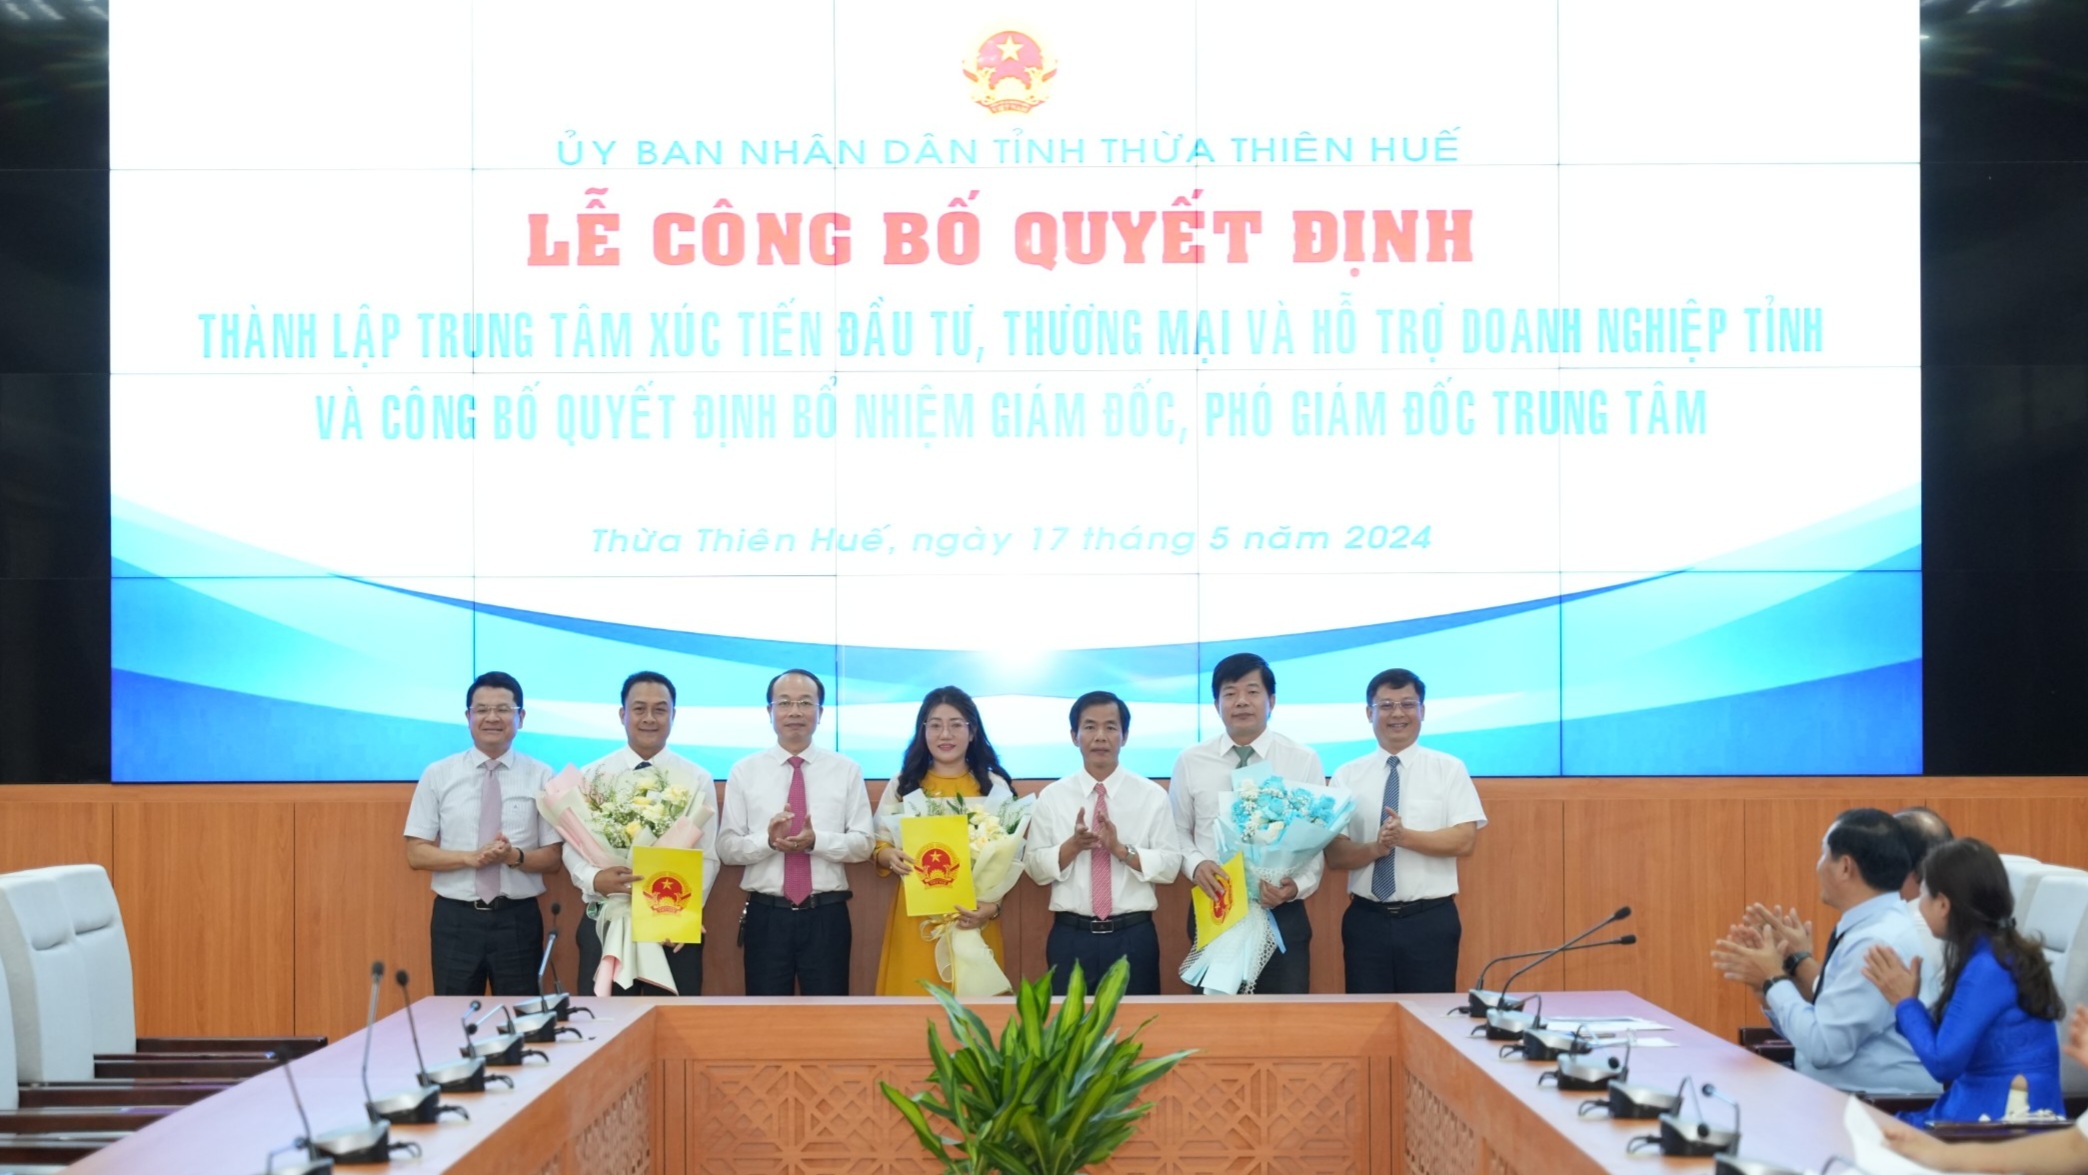 Lãnh đạo tỉnh Thừa Thiên Huế trao quyết định bổ nhiệm và tặng hoa chúc mừng các cán bộ lãnh đạo Ban giám đốc Trung tâm Xúc tiến đầu tư, Thương mại và Hỗ trợ doanh nghiệp tỉnh Thừa Thiên Huế 